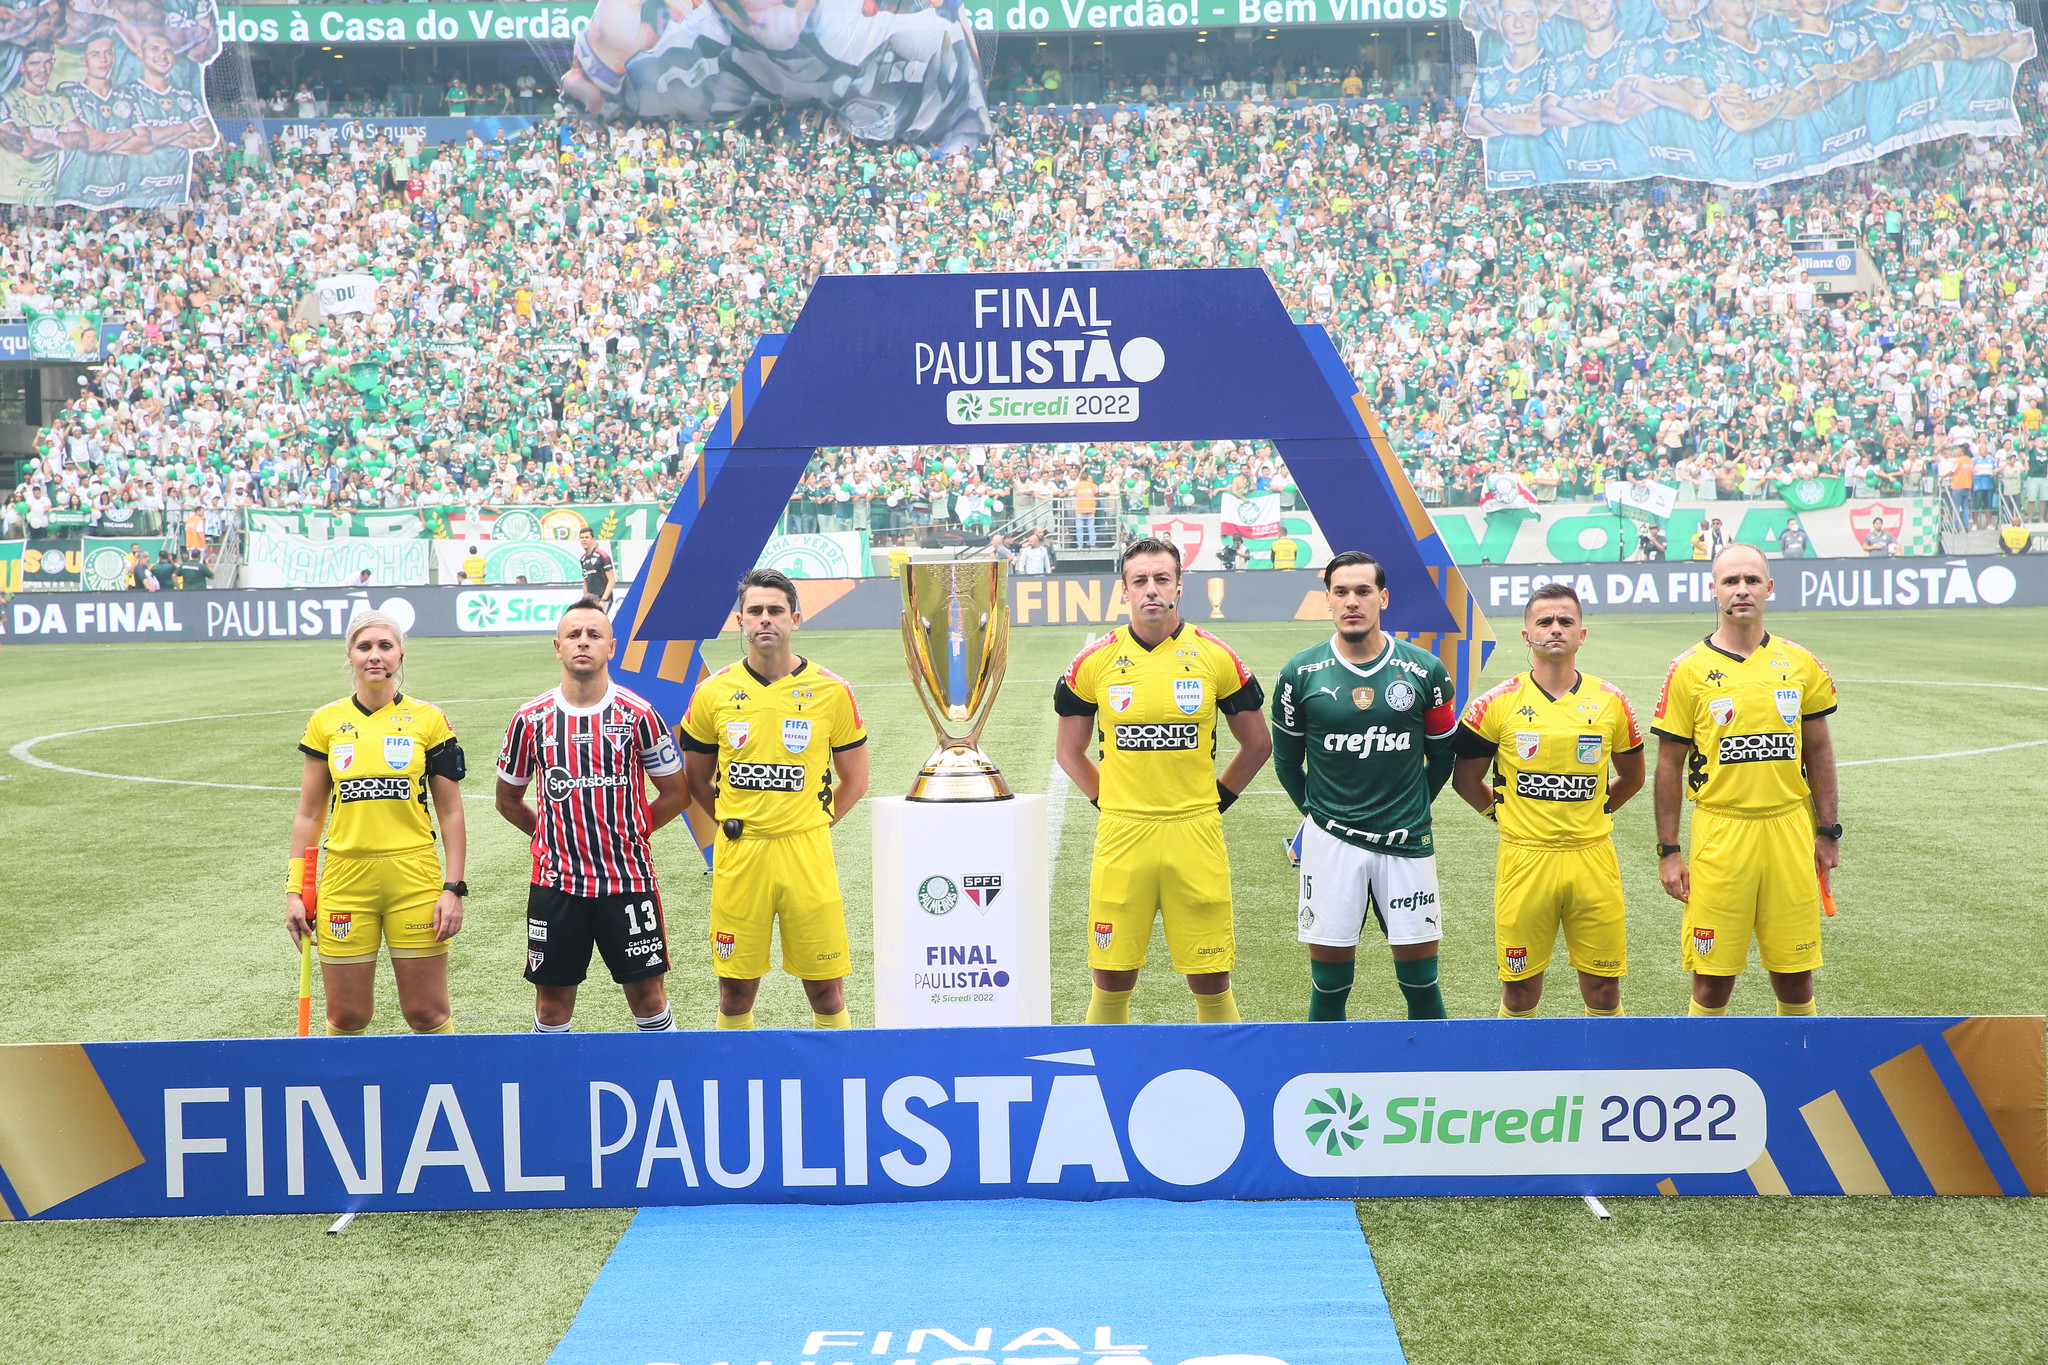 Sorteio definiu a composição dos grupos do Campeonato Paulista 2023